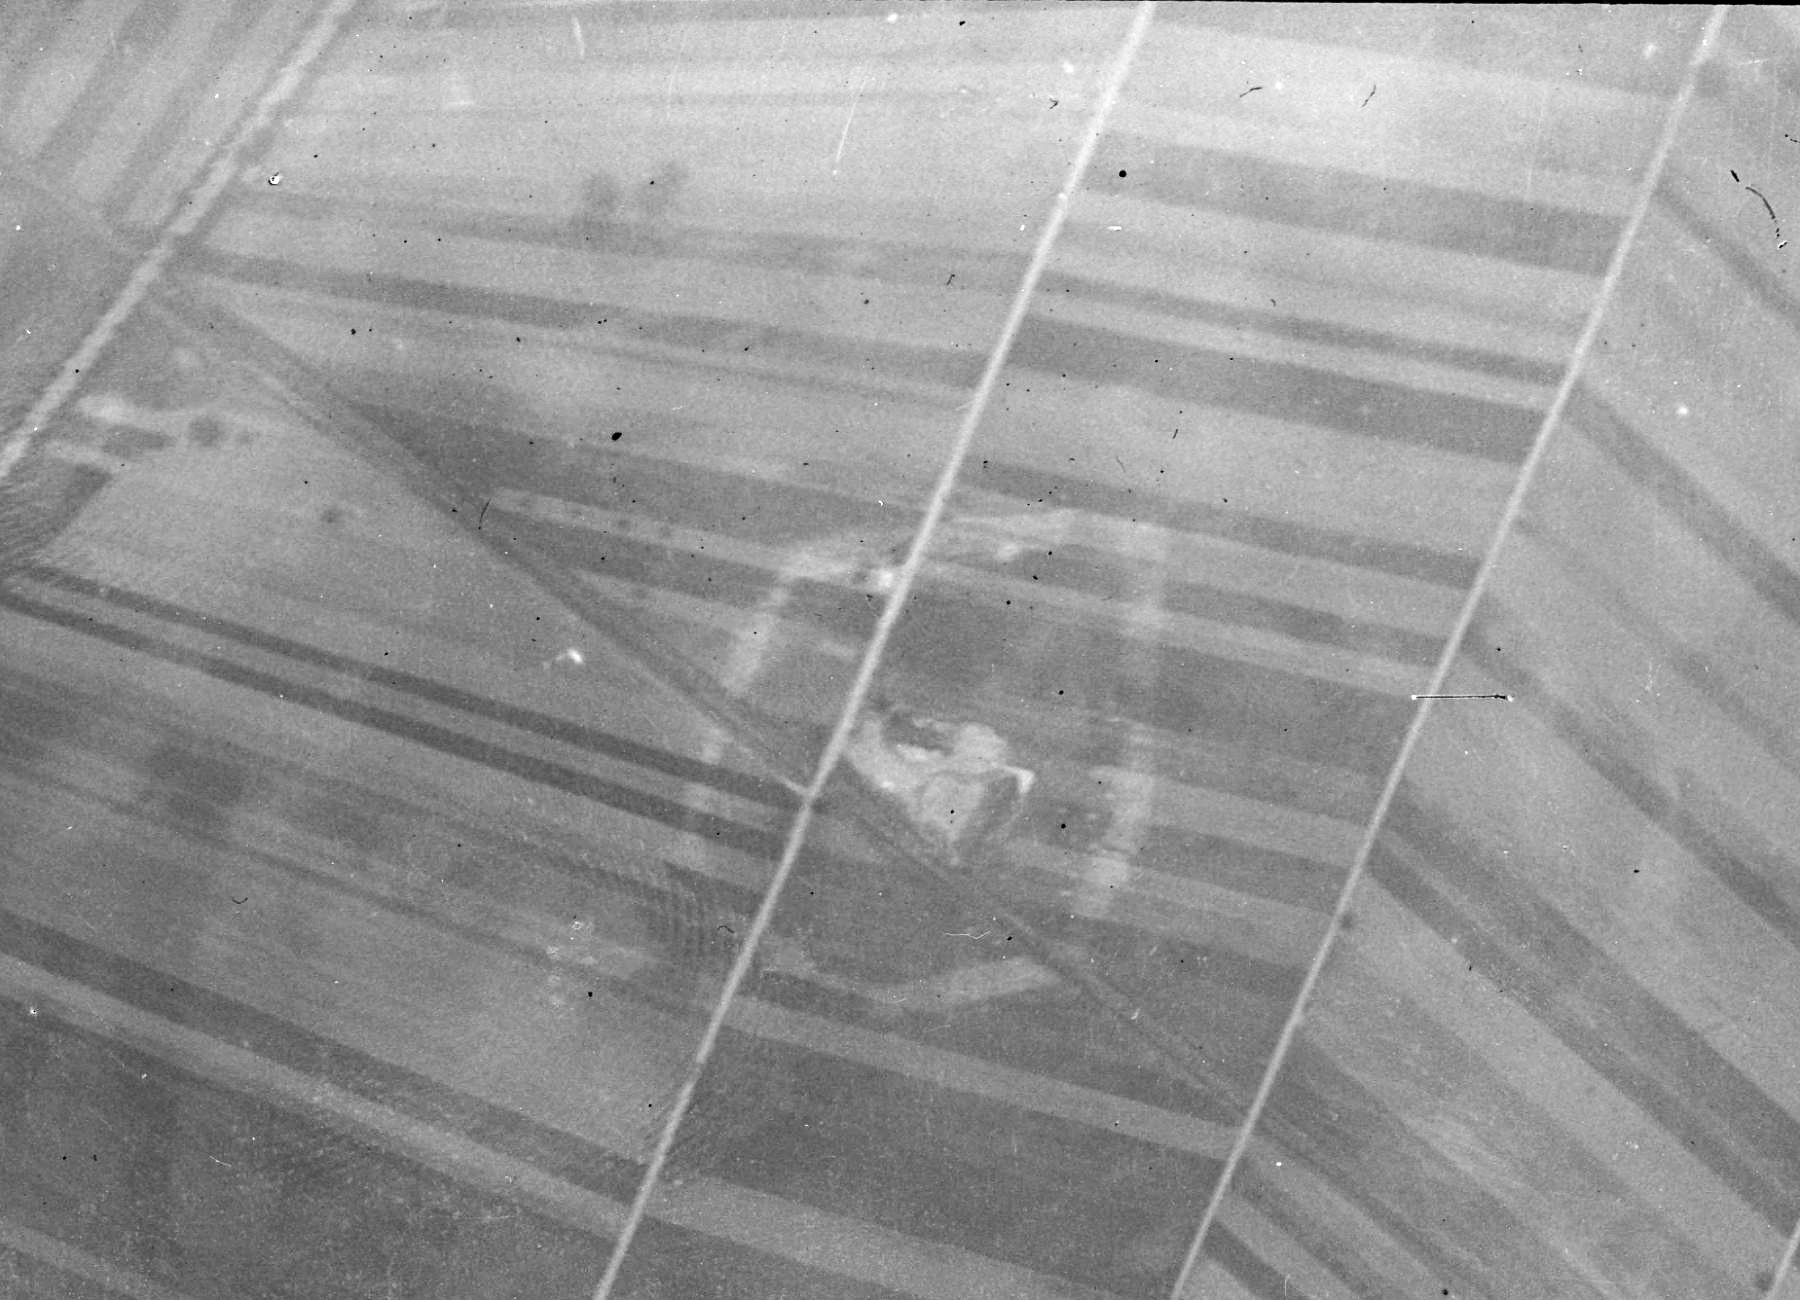 Ligne Maginot - 61/3 - OTTMARSHEIM SUD - (Casemate d'infanterie - Double) - Vue aérienne année 1934.
La casemate et les réseaux sont nettement visibles sur ce cliché